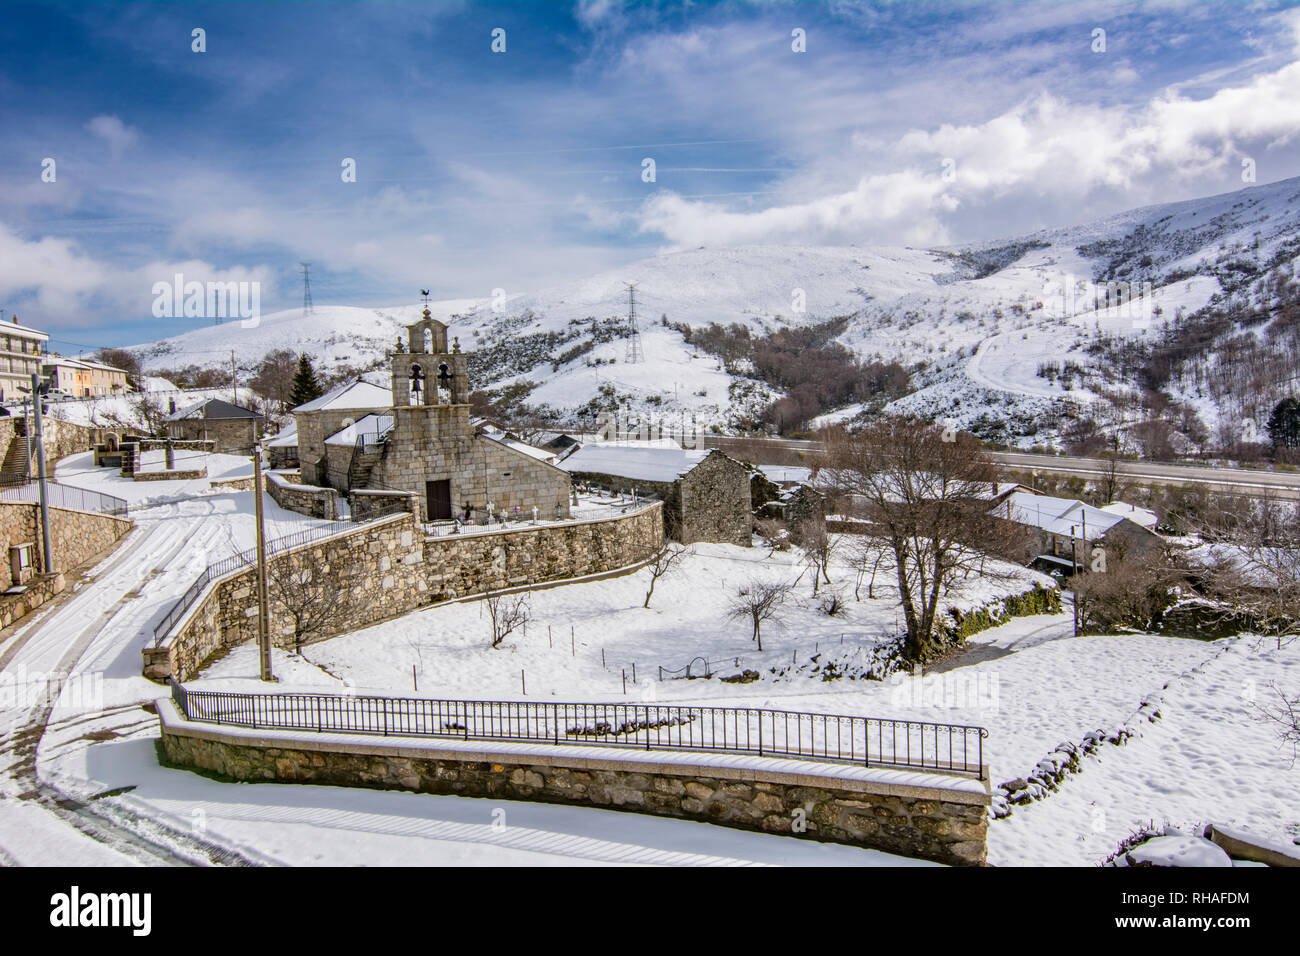 Padornelo, Zamora, Spanien; Januar 2017: Blick auf die Kirche von padornelo nach einem Schneefall im Winter Stockfoto